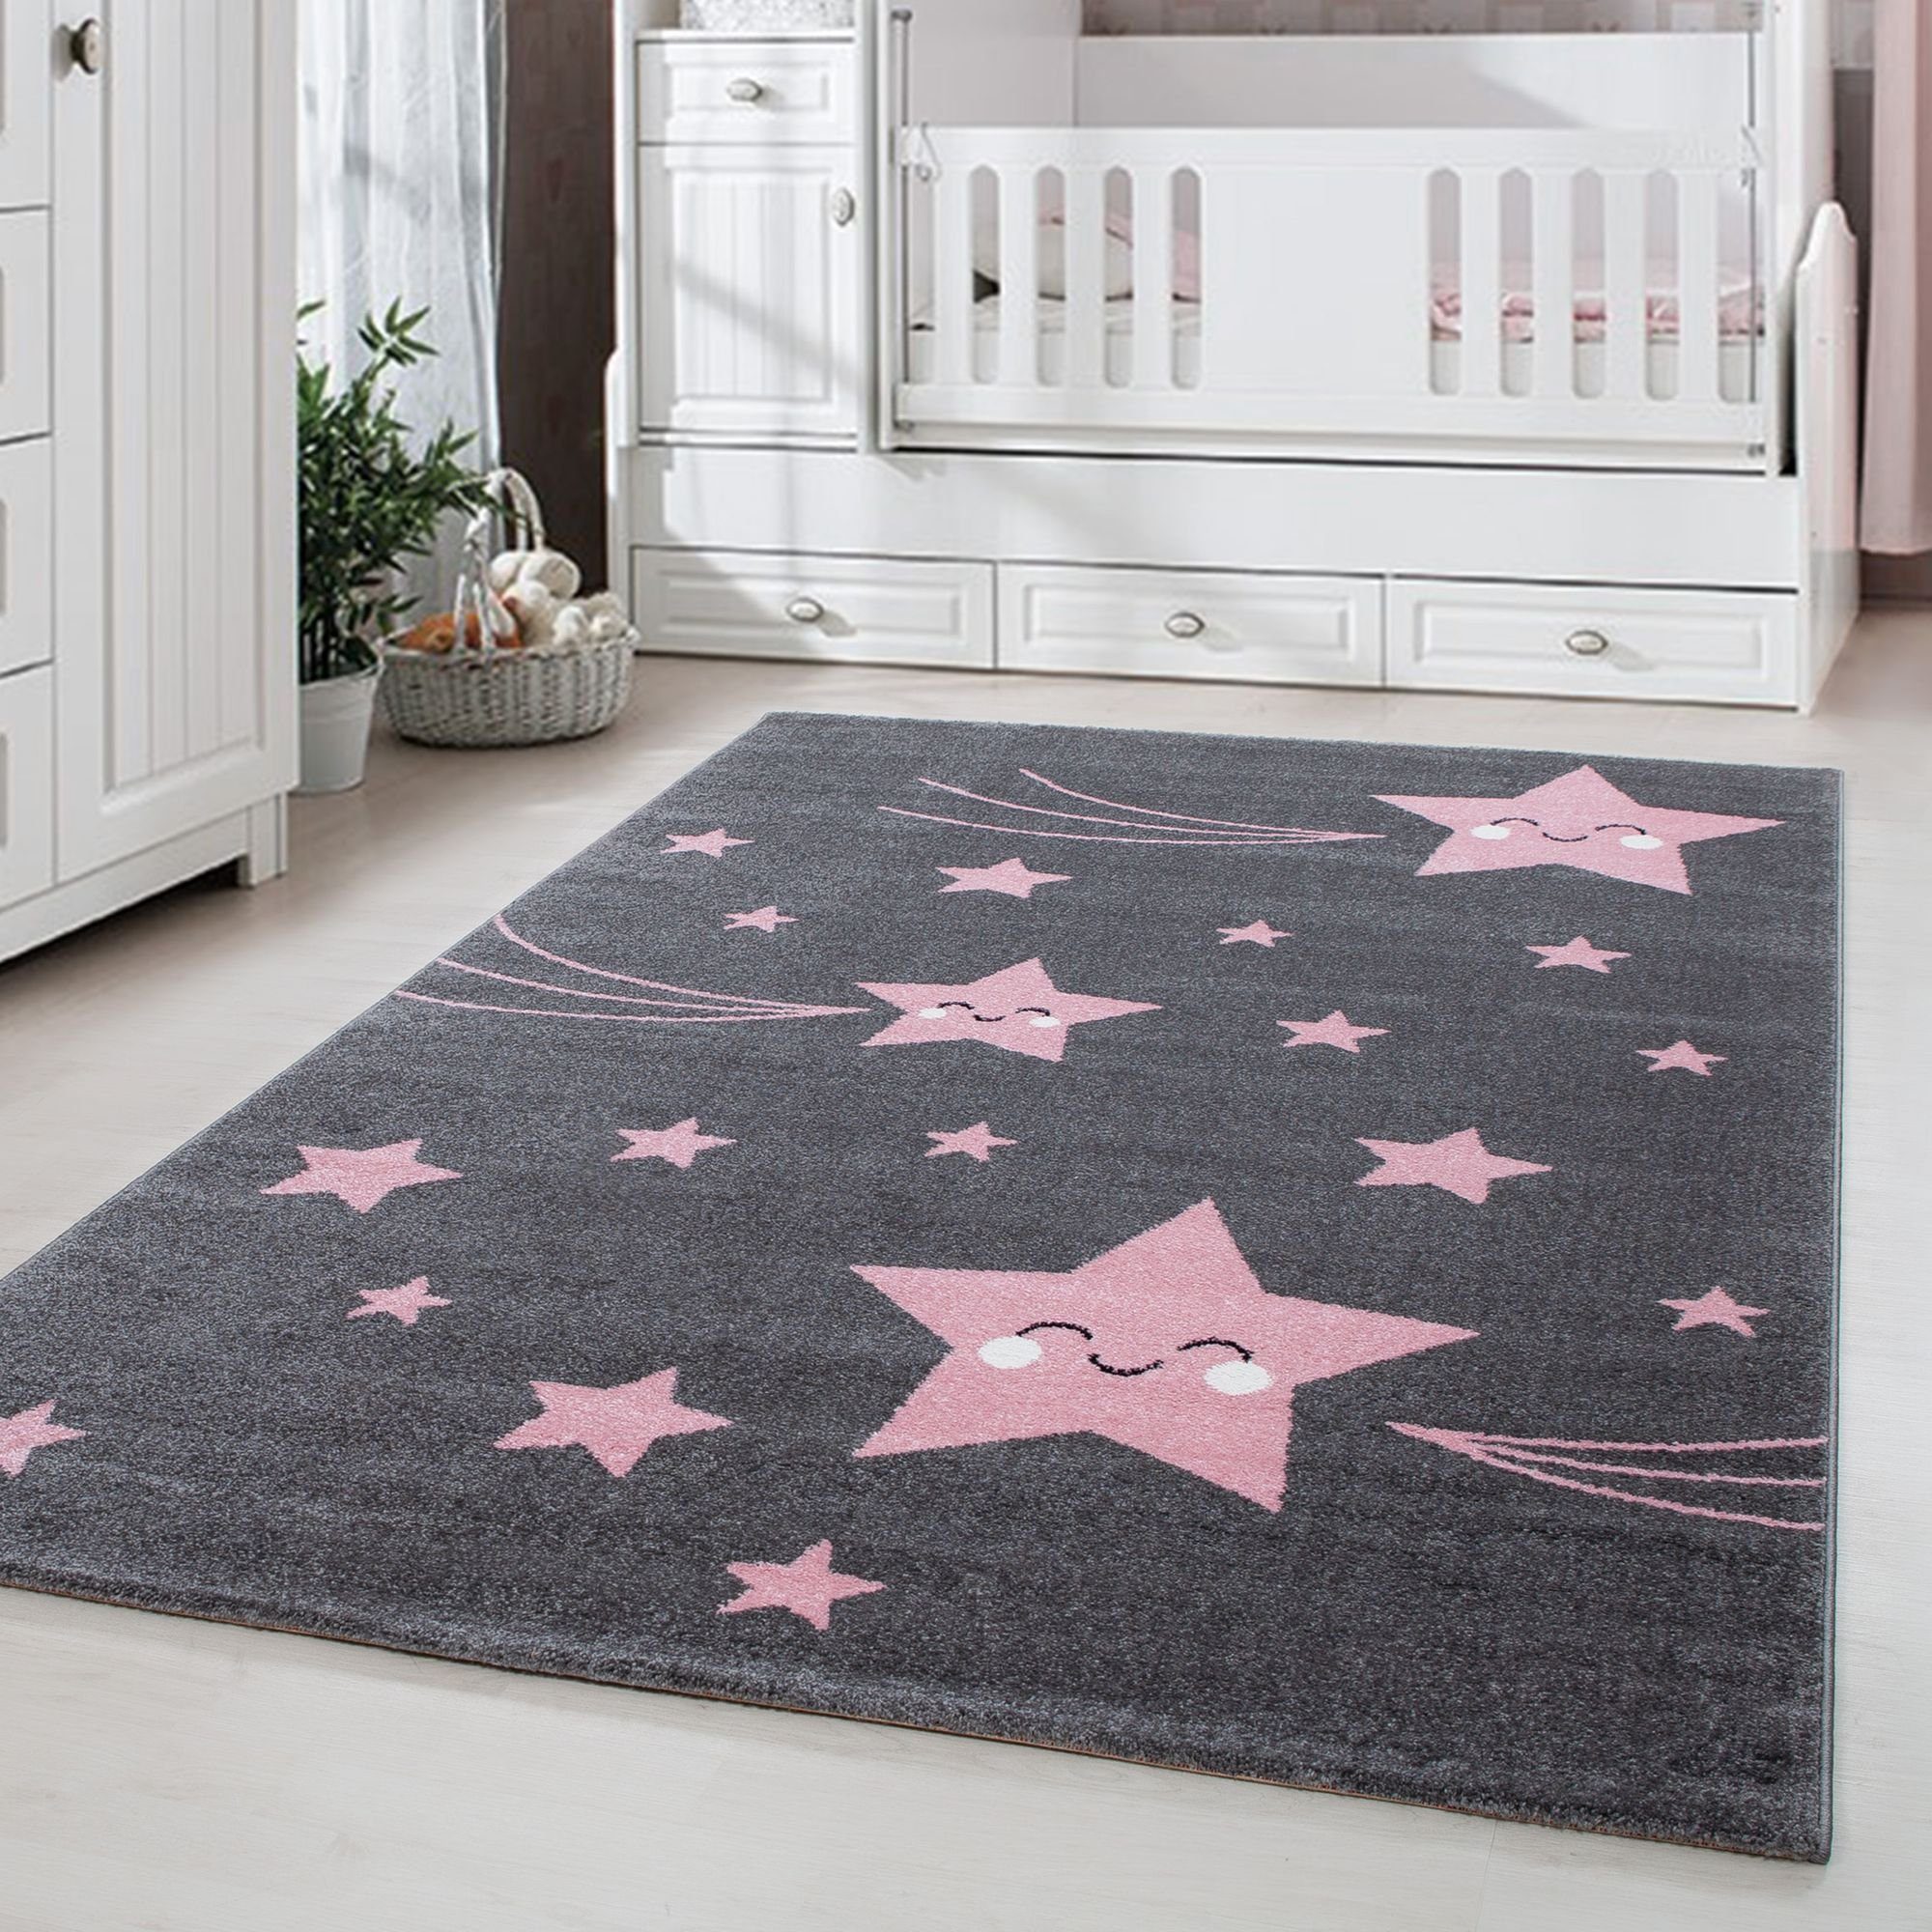 Kinderteppich Sterne-Design, Carpetsale24, Rechteckig, Höhe: 11 mm, Kinderteppich Stern-Design Rosa Baby Teppich Kinderzimmer Pflegeleicht